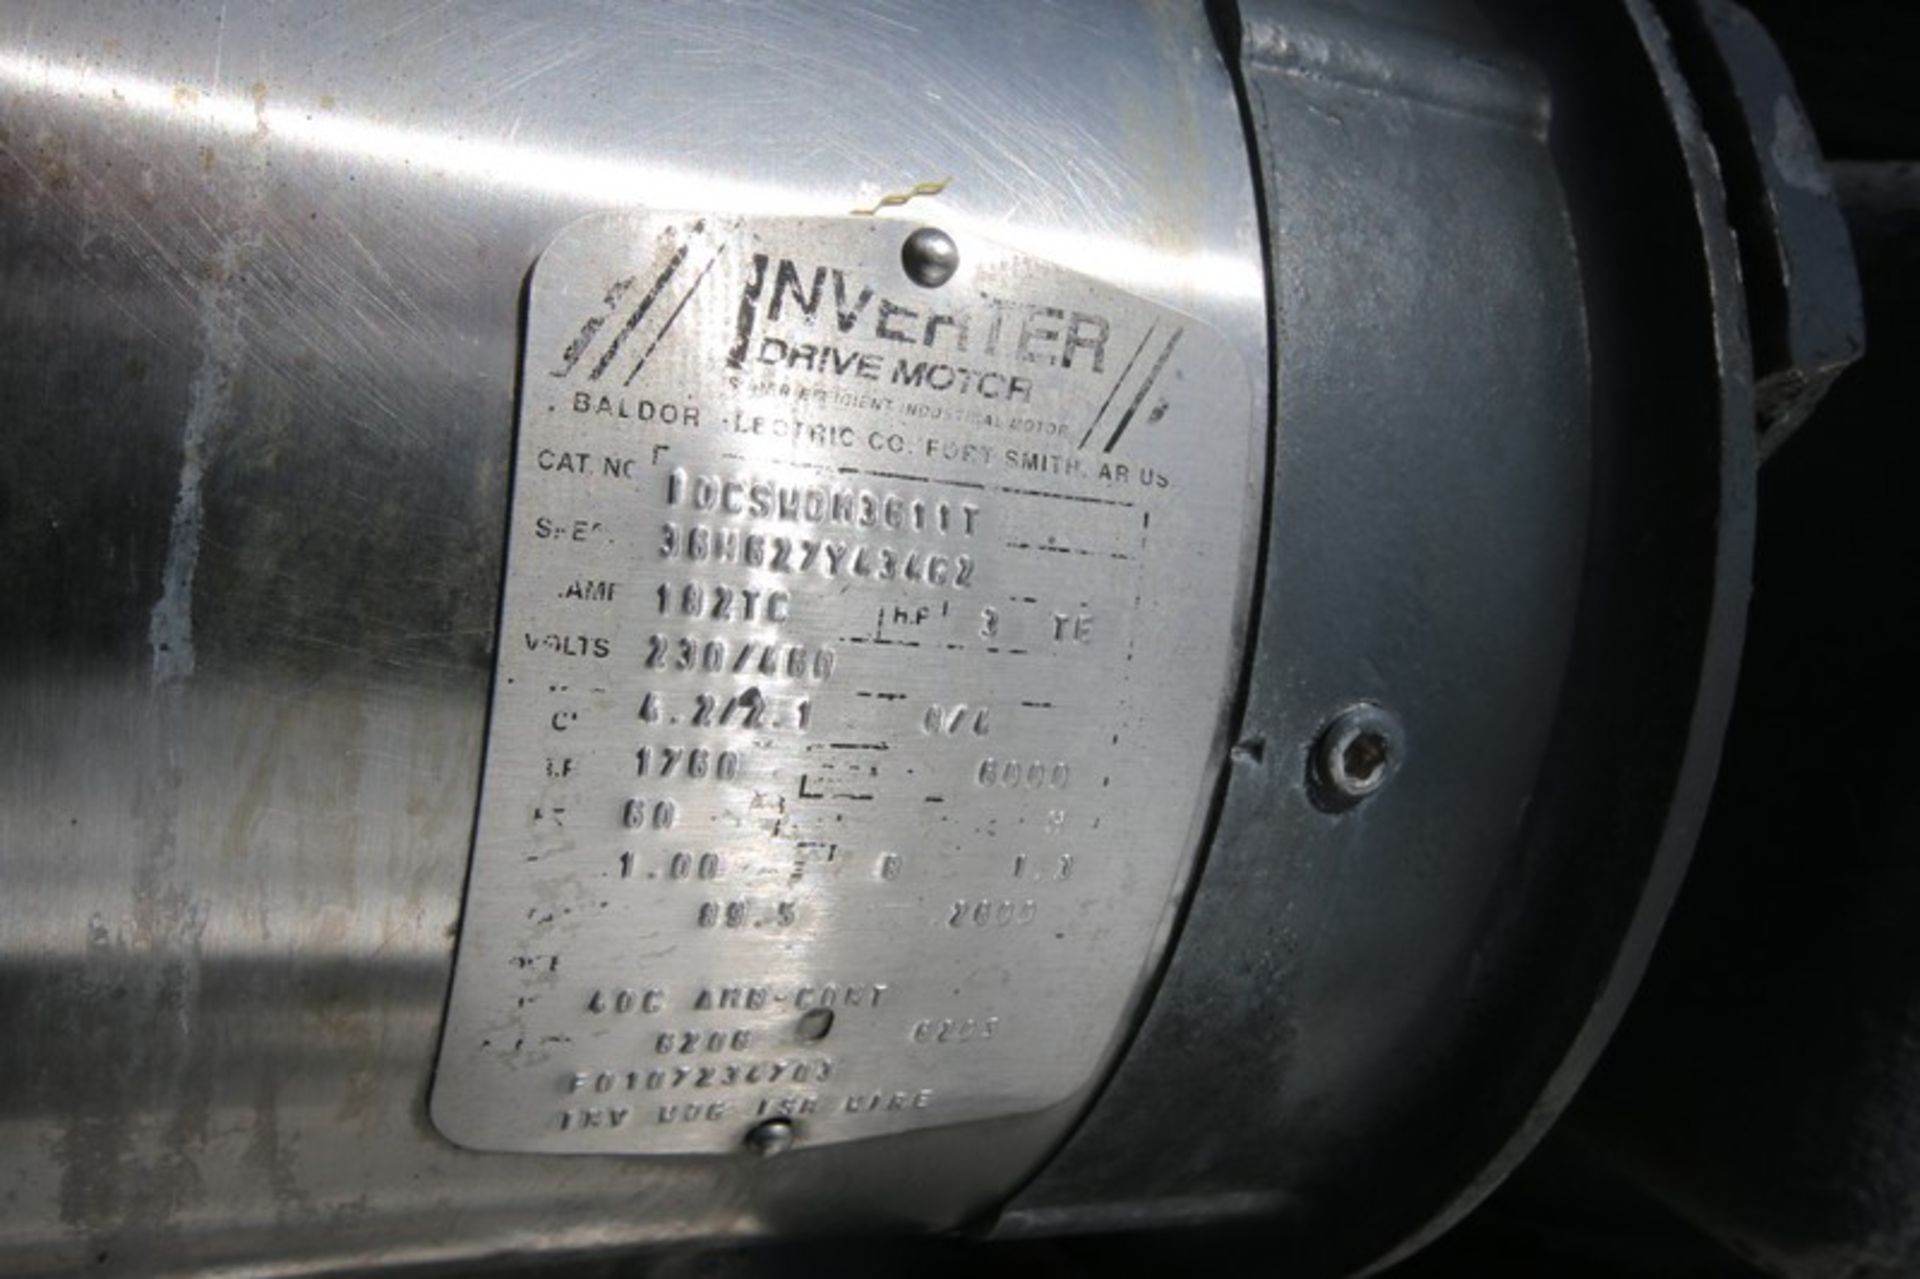 Chester Jenson Aprox. 600 Gallon Cone Bottom Jacket S/S Kettle, Size/Type M70N40C.C, SN 8210-P, with - Image 9 of 9